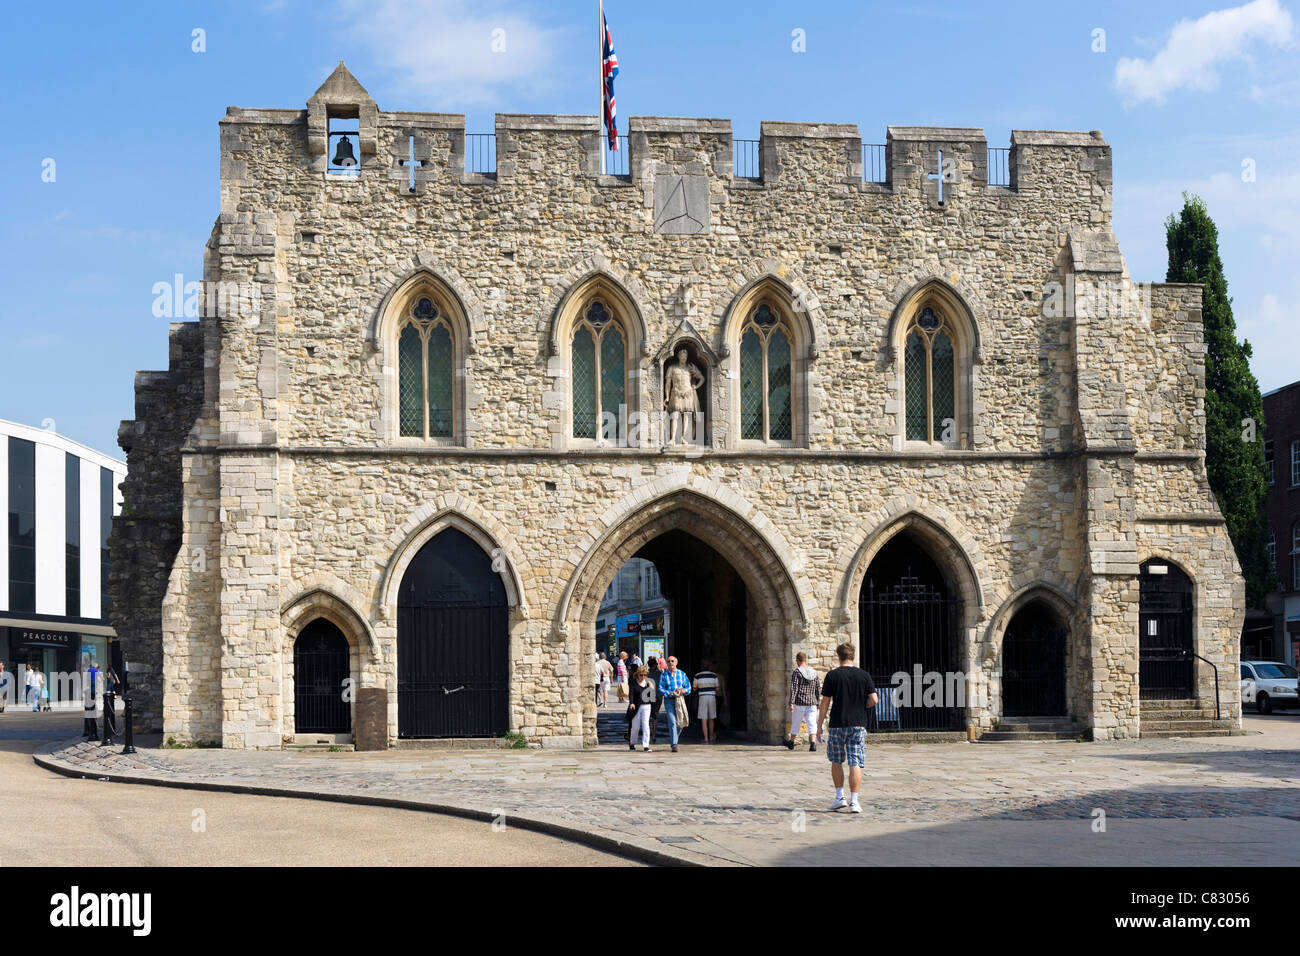 La passerelle médiévale Bargate dans le centre-ville, Southampton, Hampshire, England, UK Banque D'Images